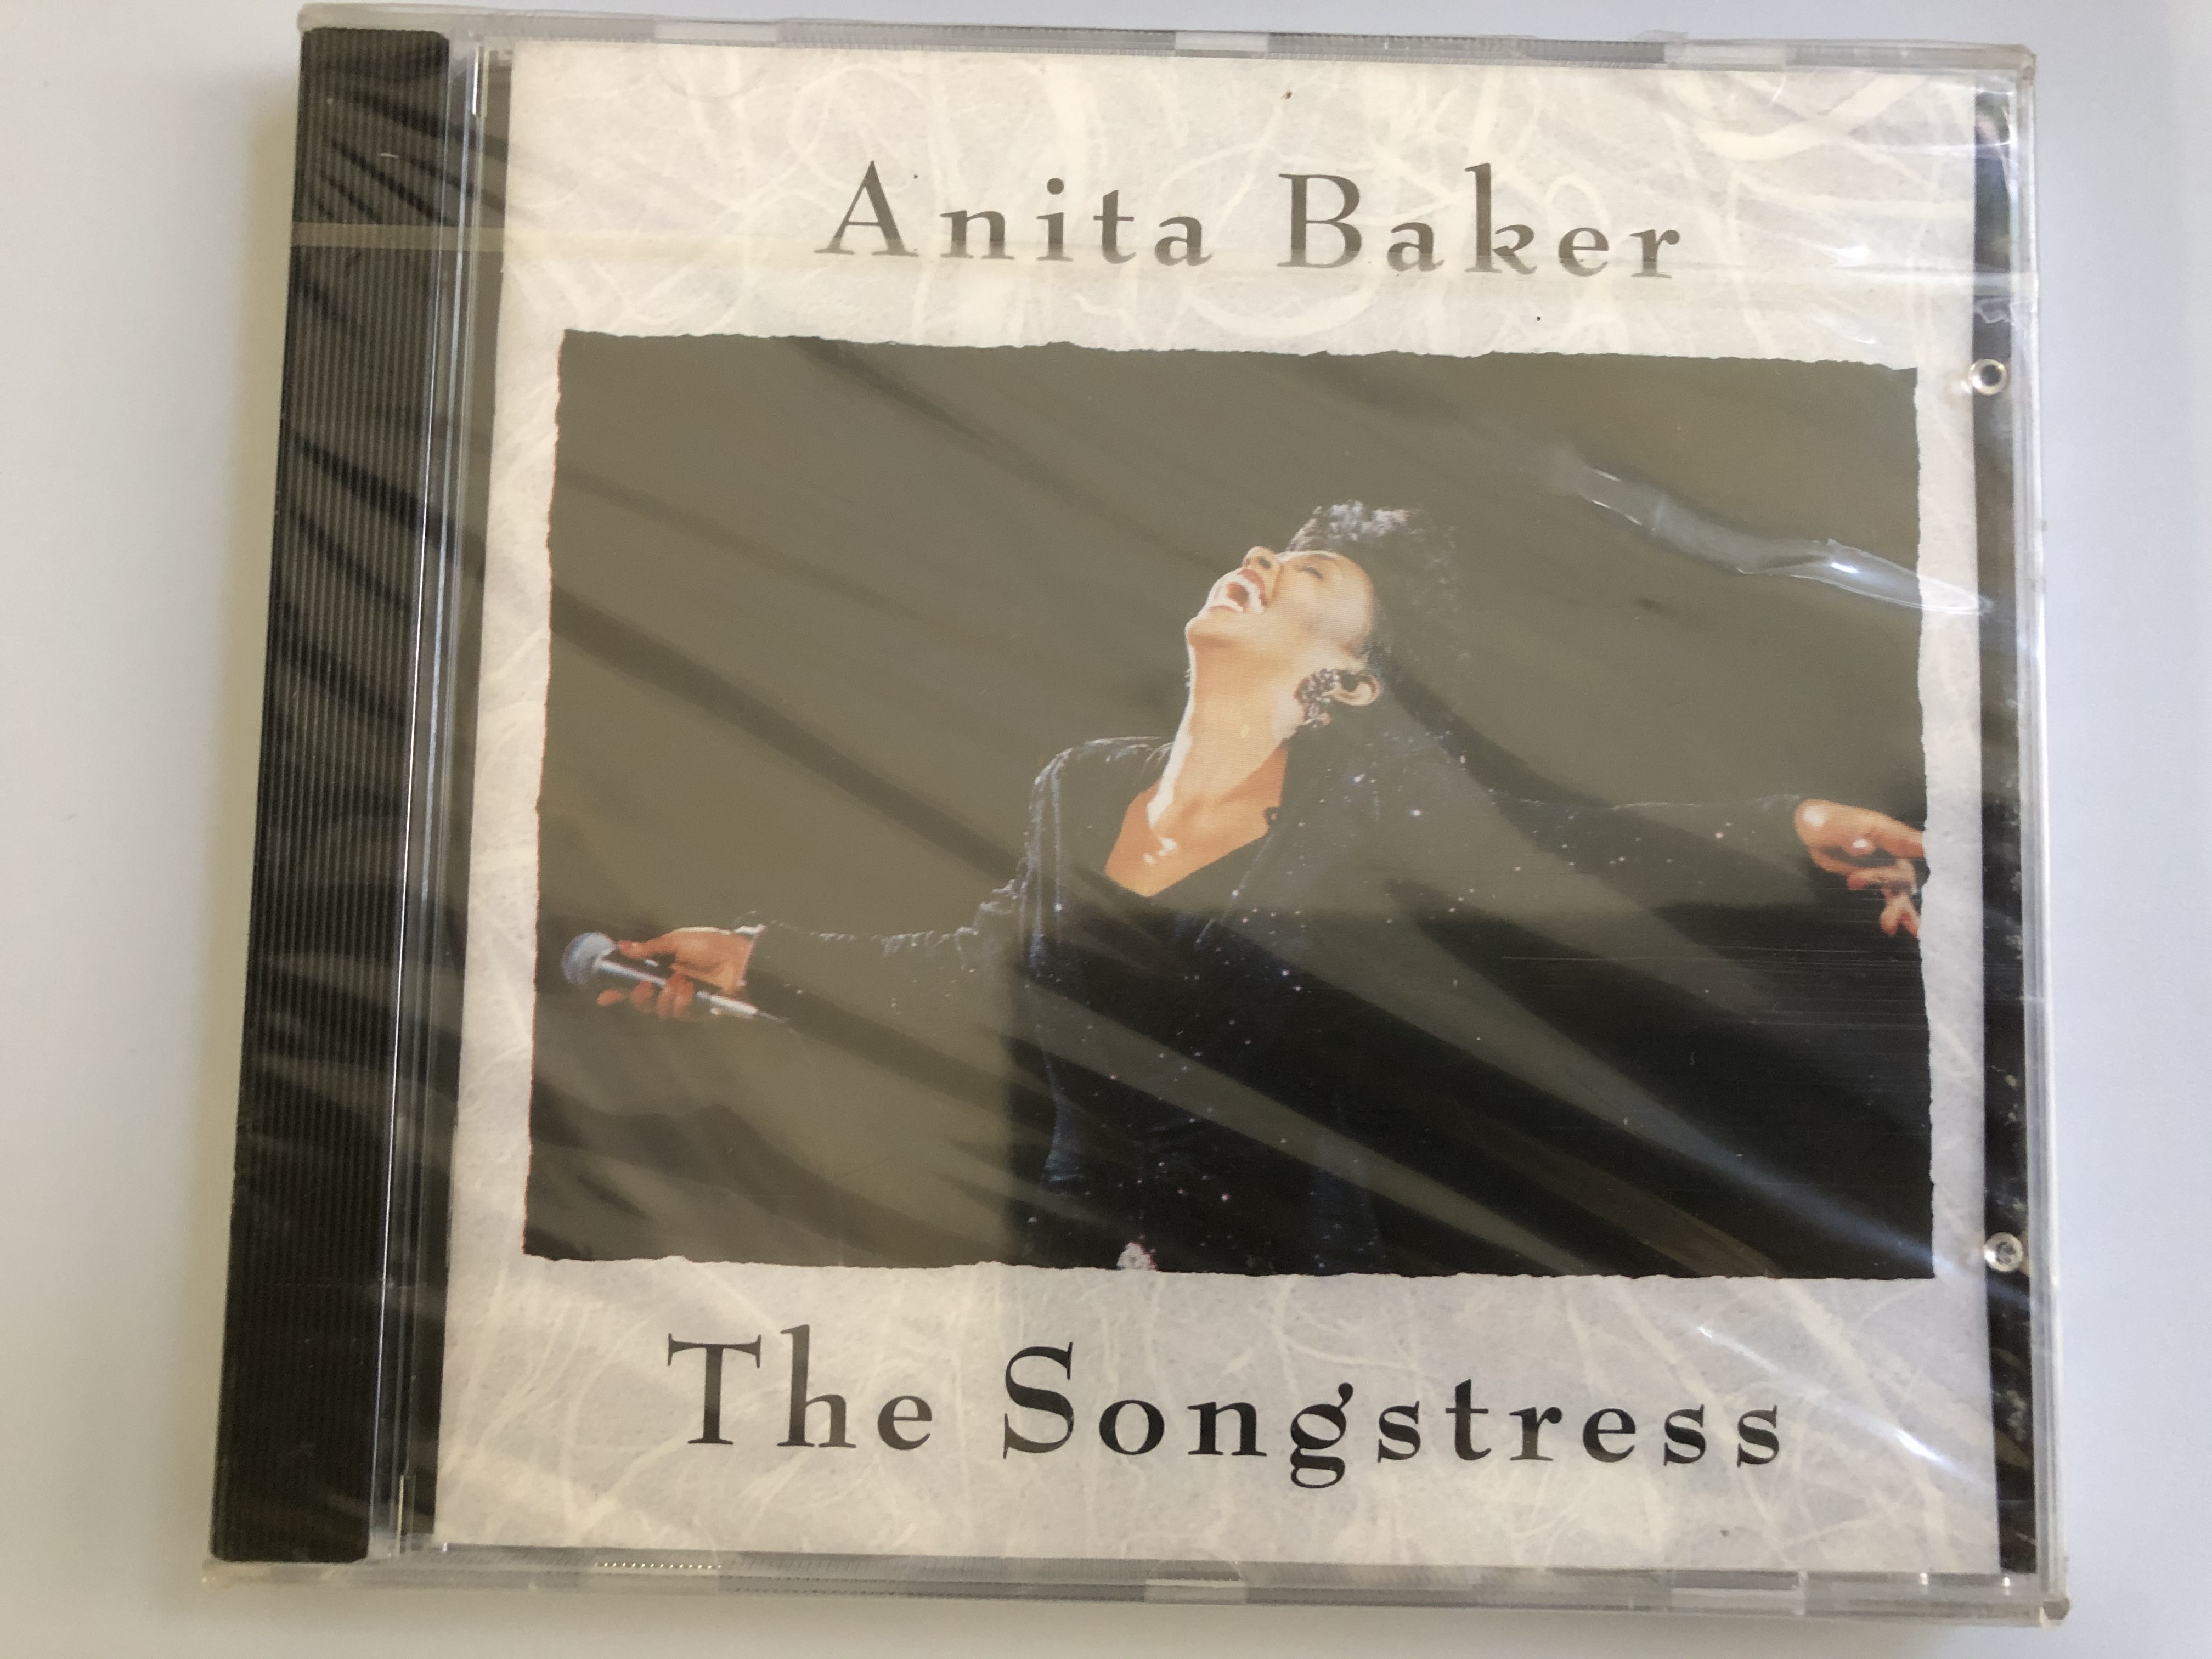 anita-baker-the-songstress-elektra-audio-cd-1991-7559-61116-2-1-.jpg